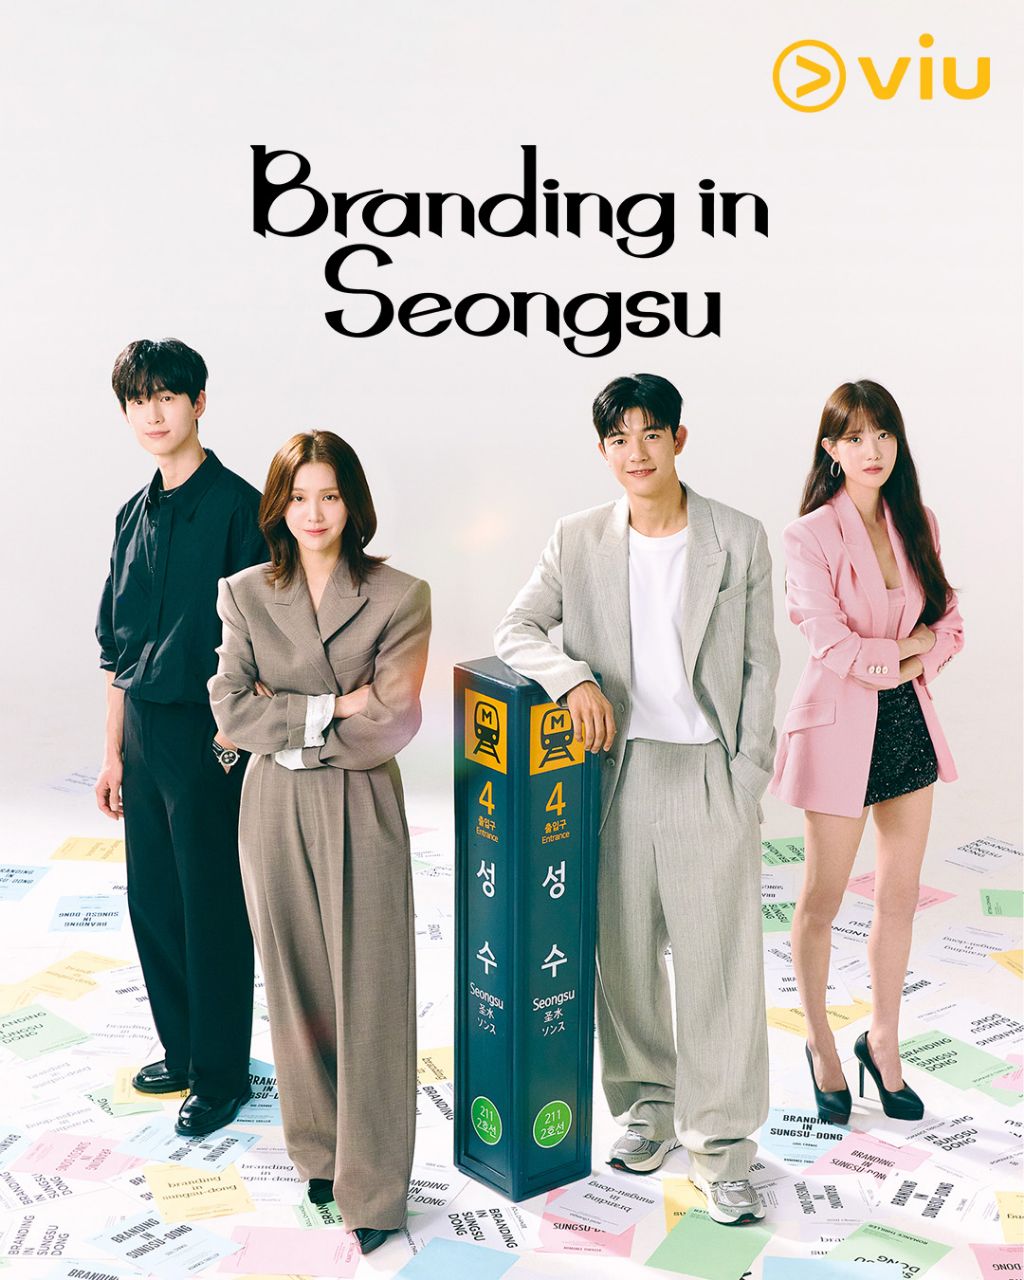 مسلسل العلامة التجارية في سيونغسو Branding in Seongsu الحلقة 12